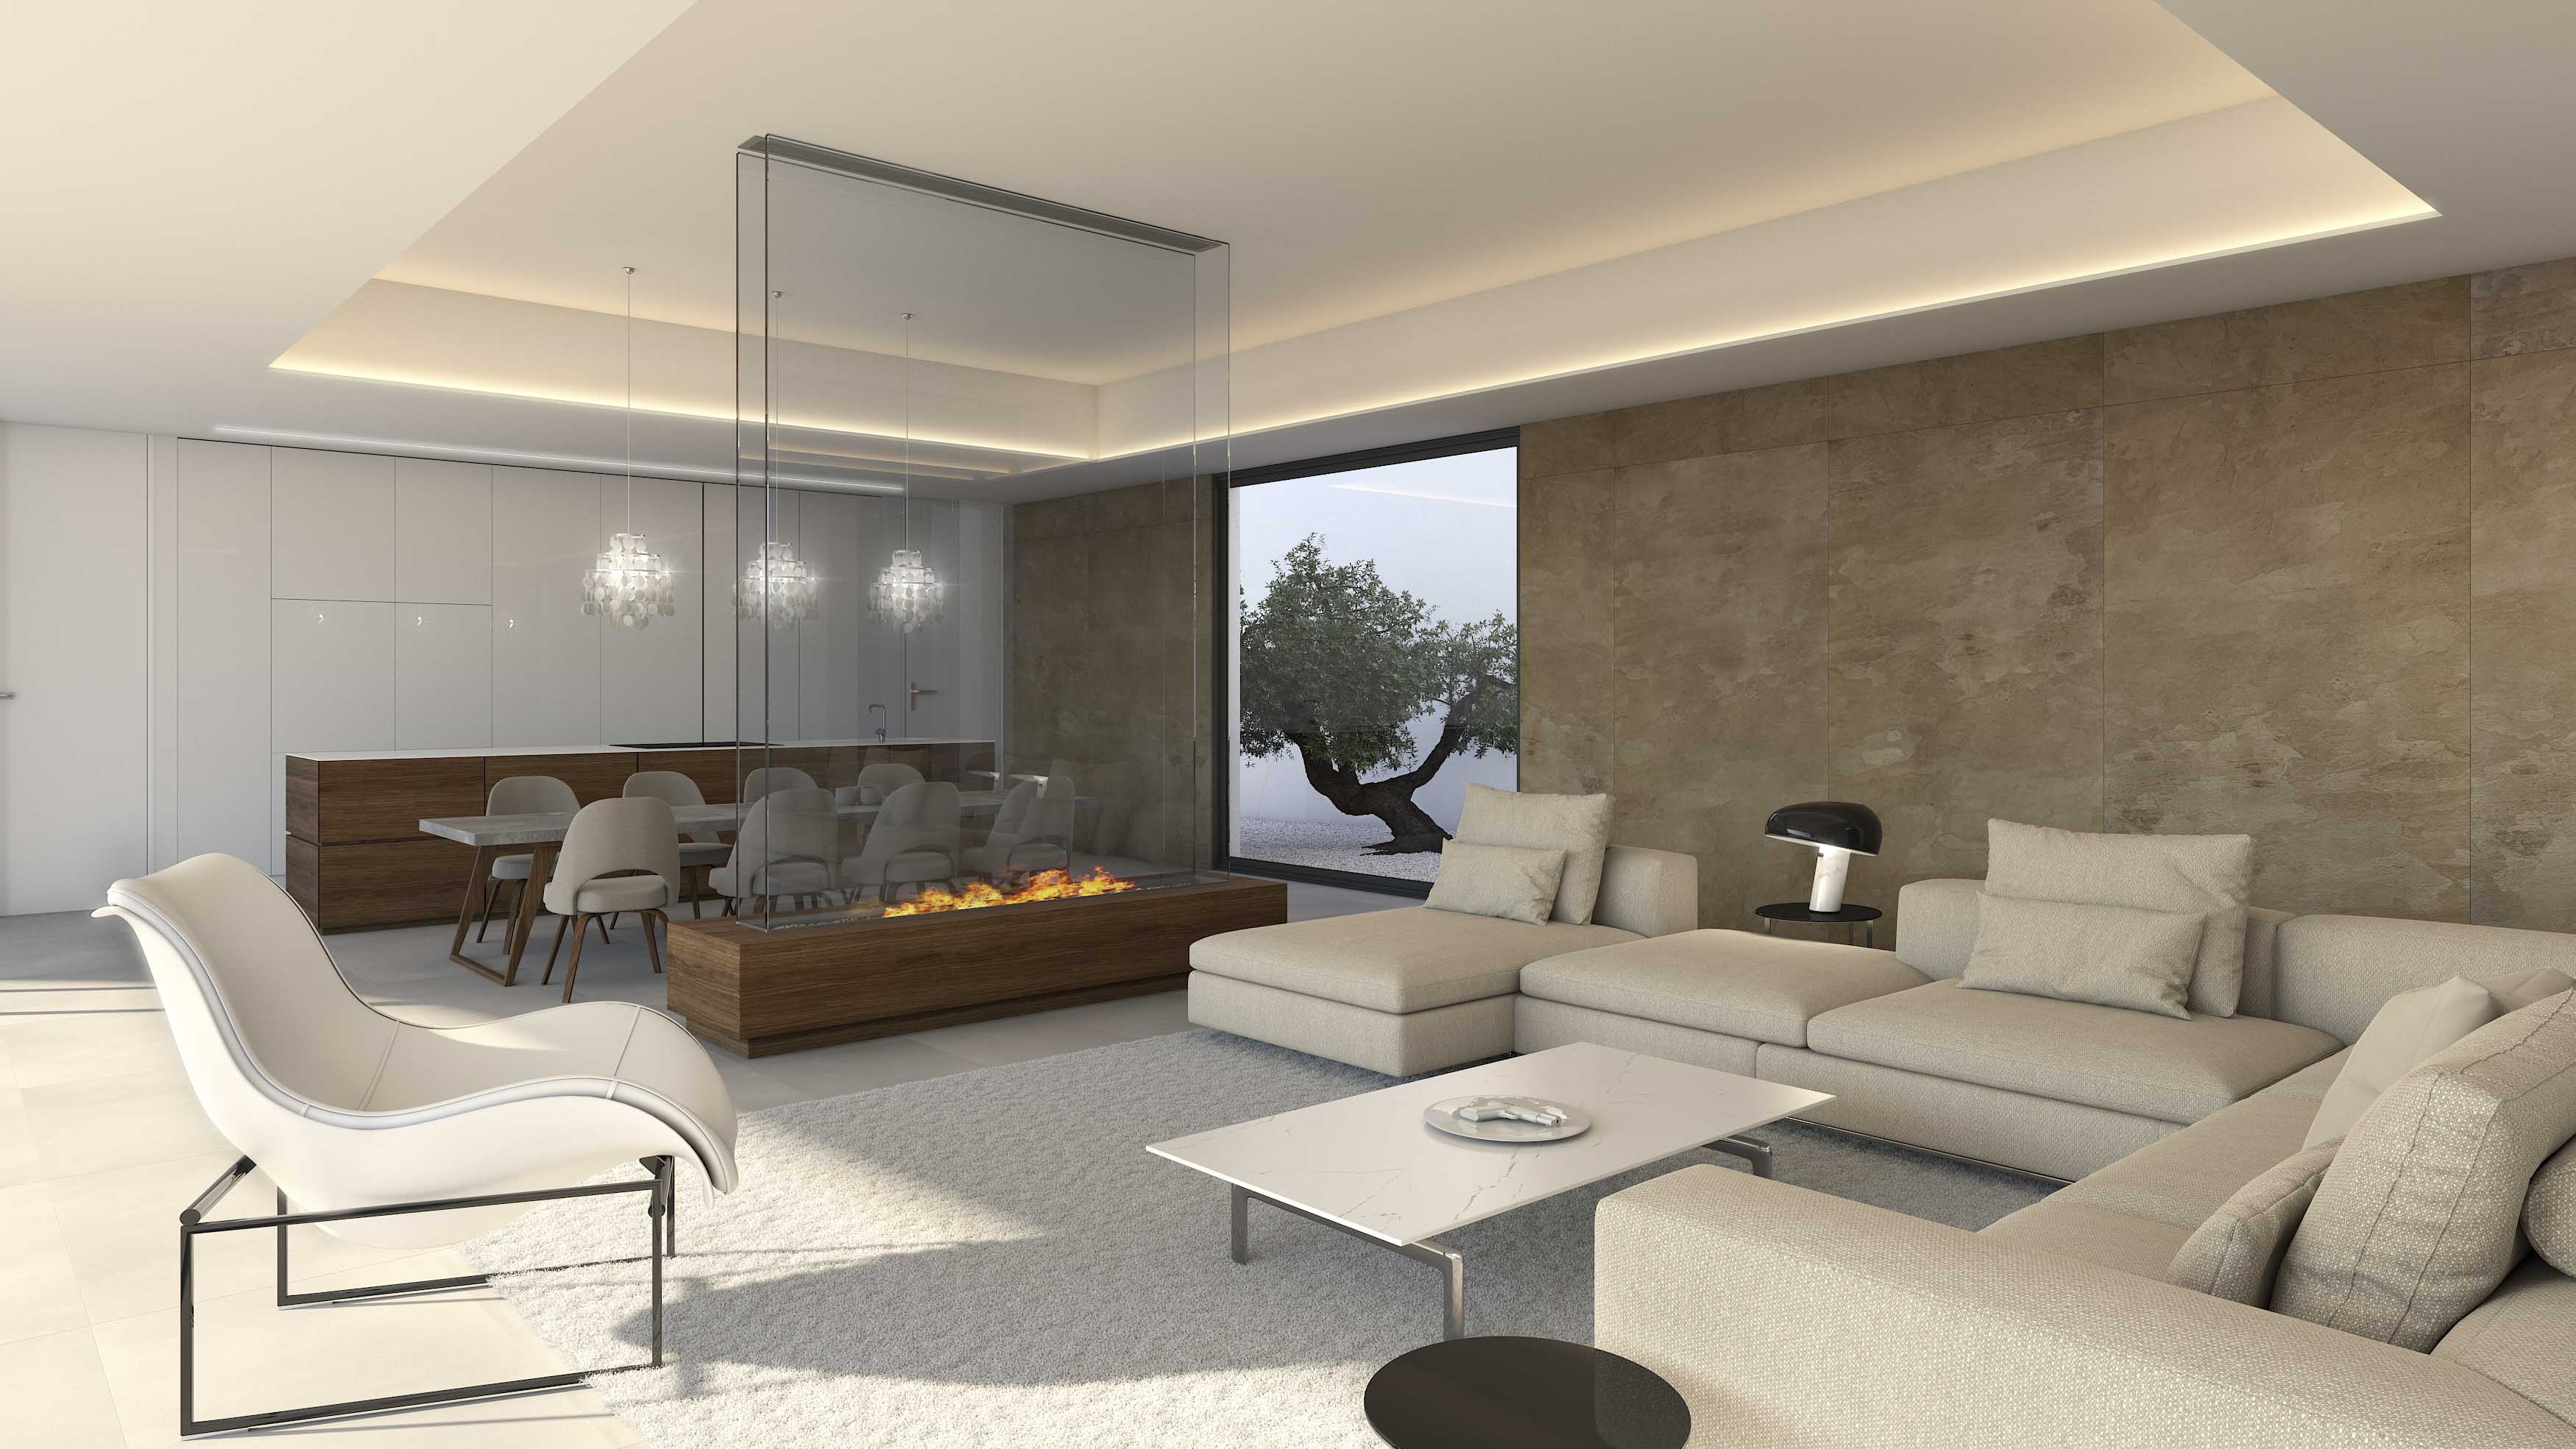 Project contemporary villa, for sale, Altea, Costa Blanca